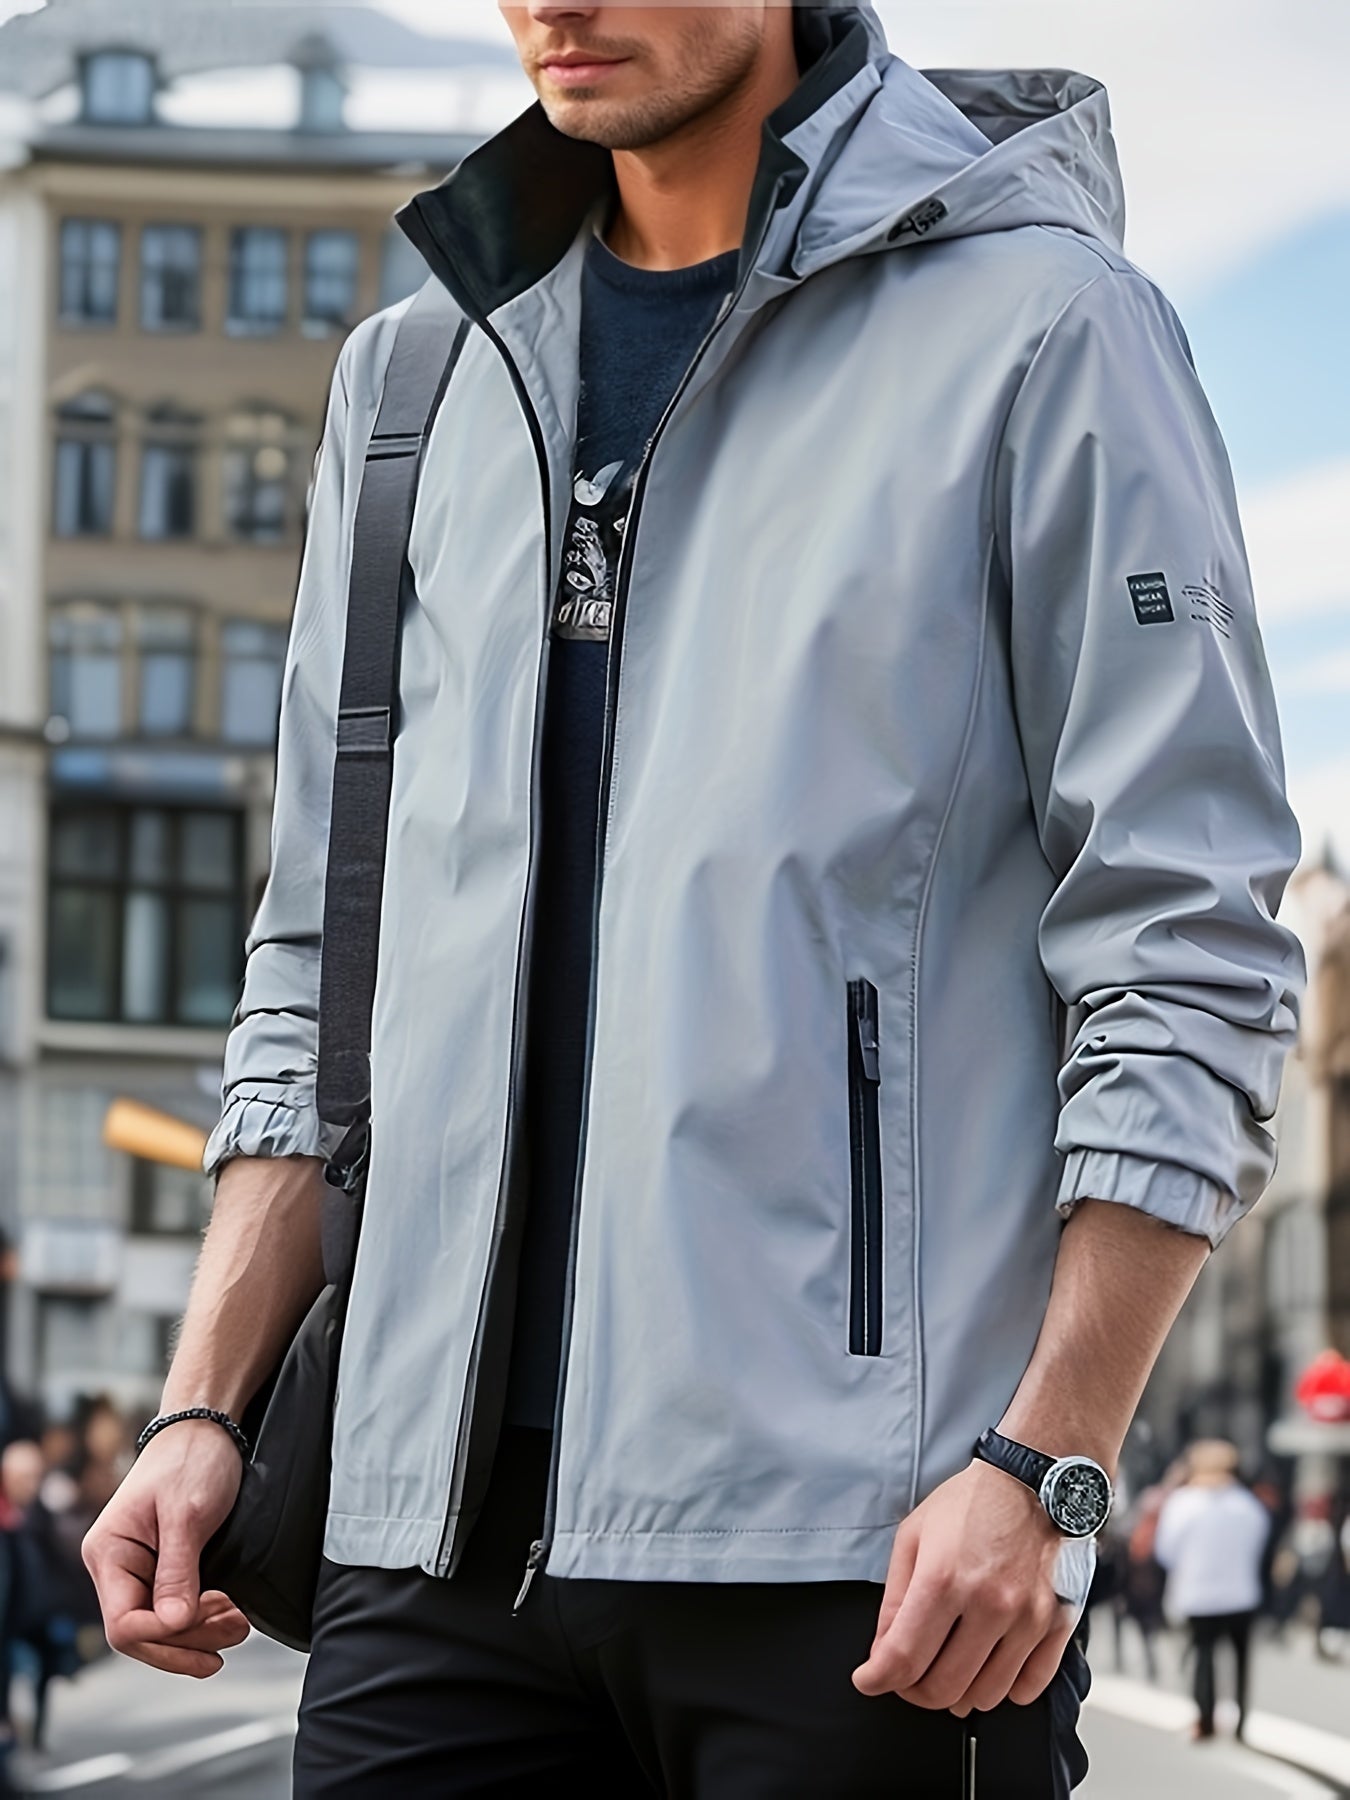 Men's Windbreaker Detachable Hooded Jacket, Zipper Pockets Jackets By Activity For Outdoor Activities